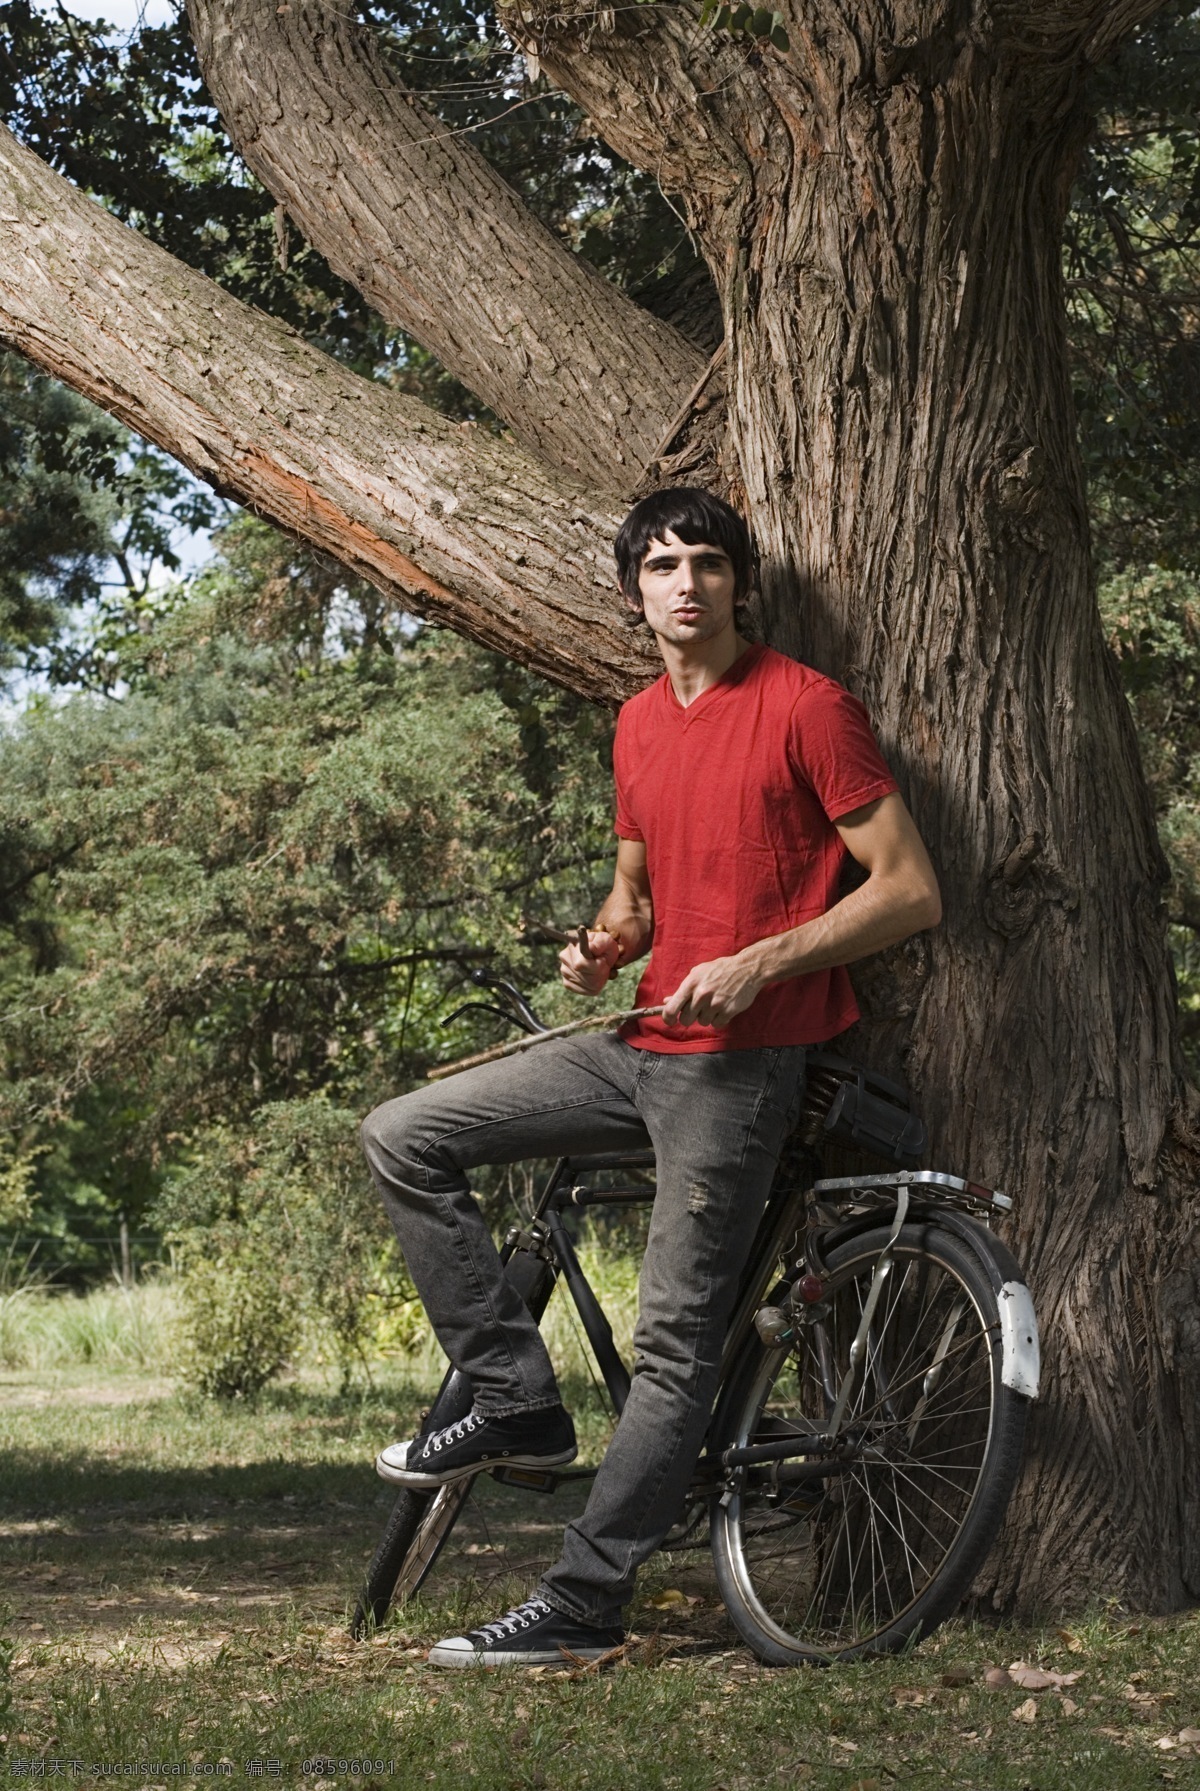 木棍 自行 车上 男人 郊外 户外 放松 外国男人 年轻男士 自行车 外国 树干 单车与男人 单车 草地 野外 男人图片 人物图片